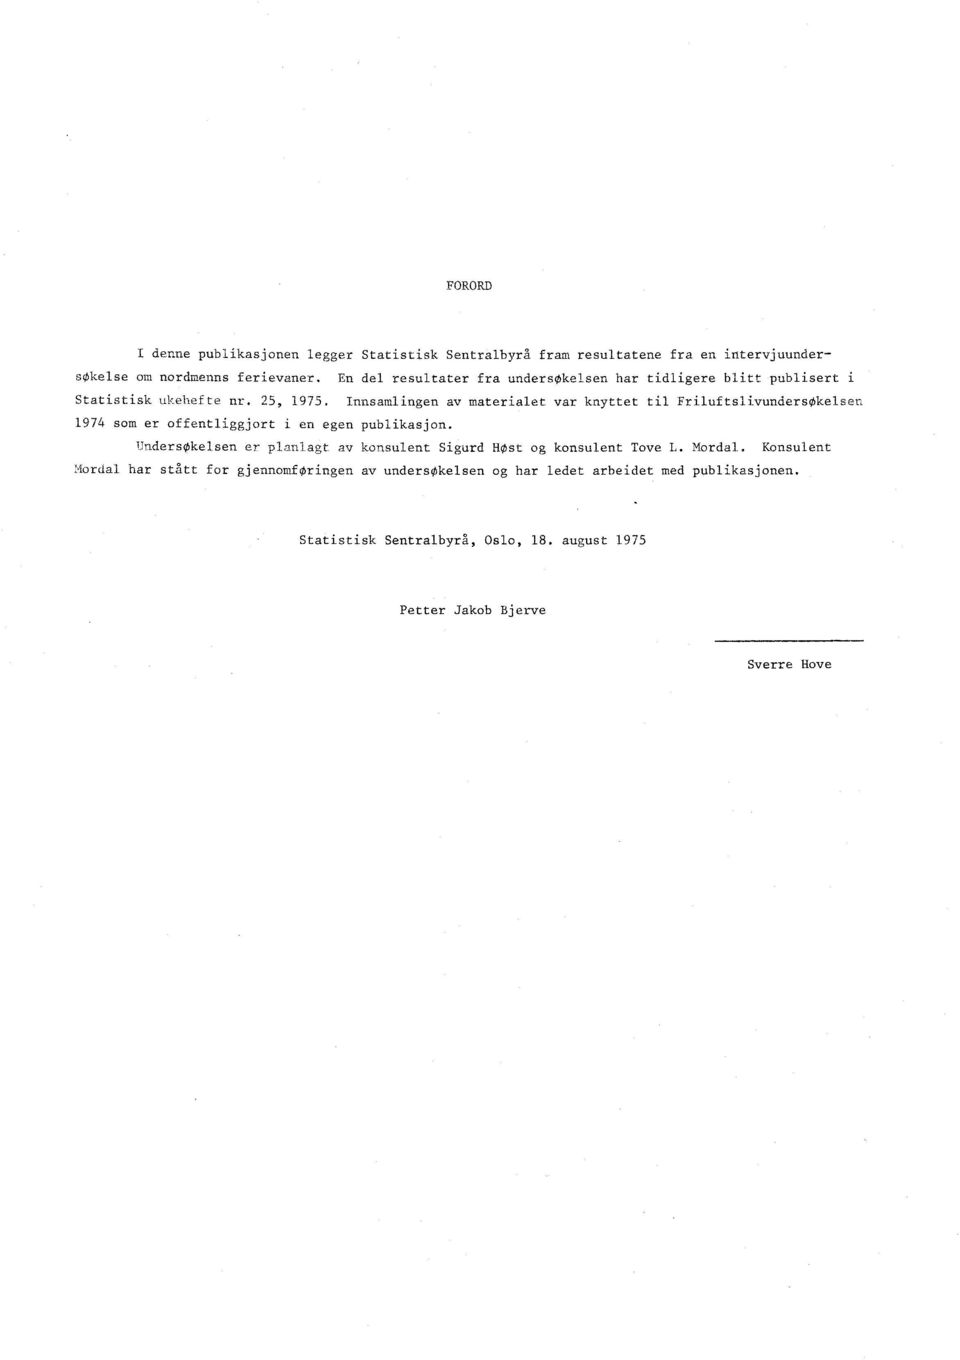 Innsamlingen av materialet var knyttet til Friluftslivundersøkelsen 1974 som er offentliggjort i en egen publikasjon.